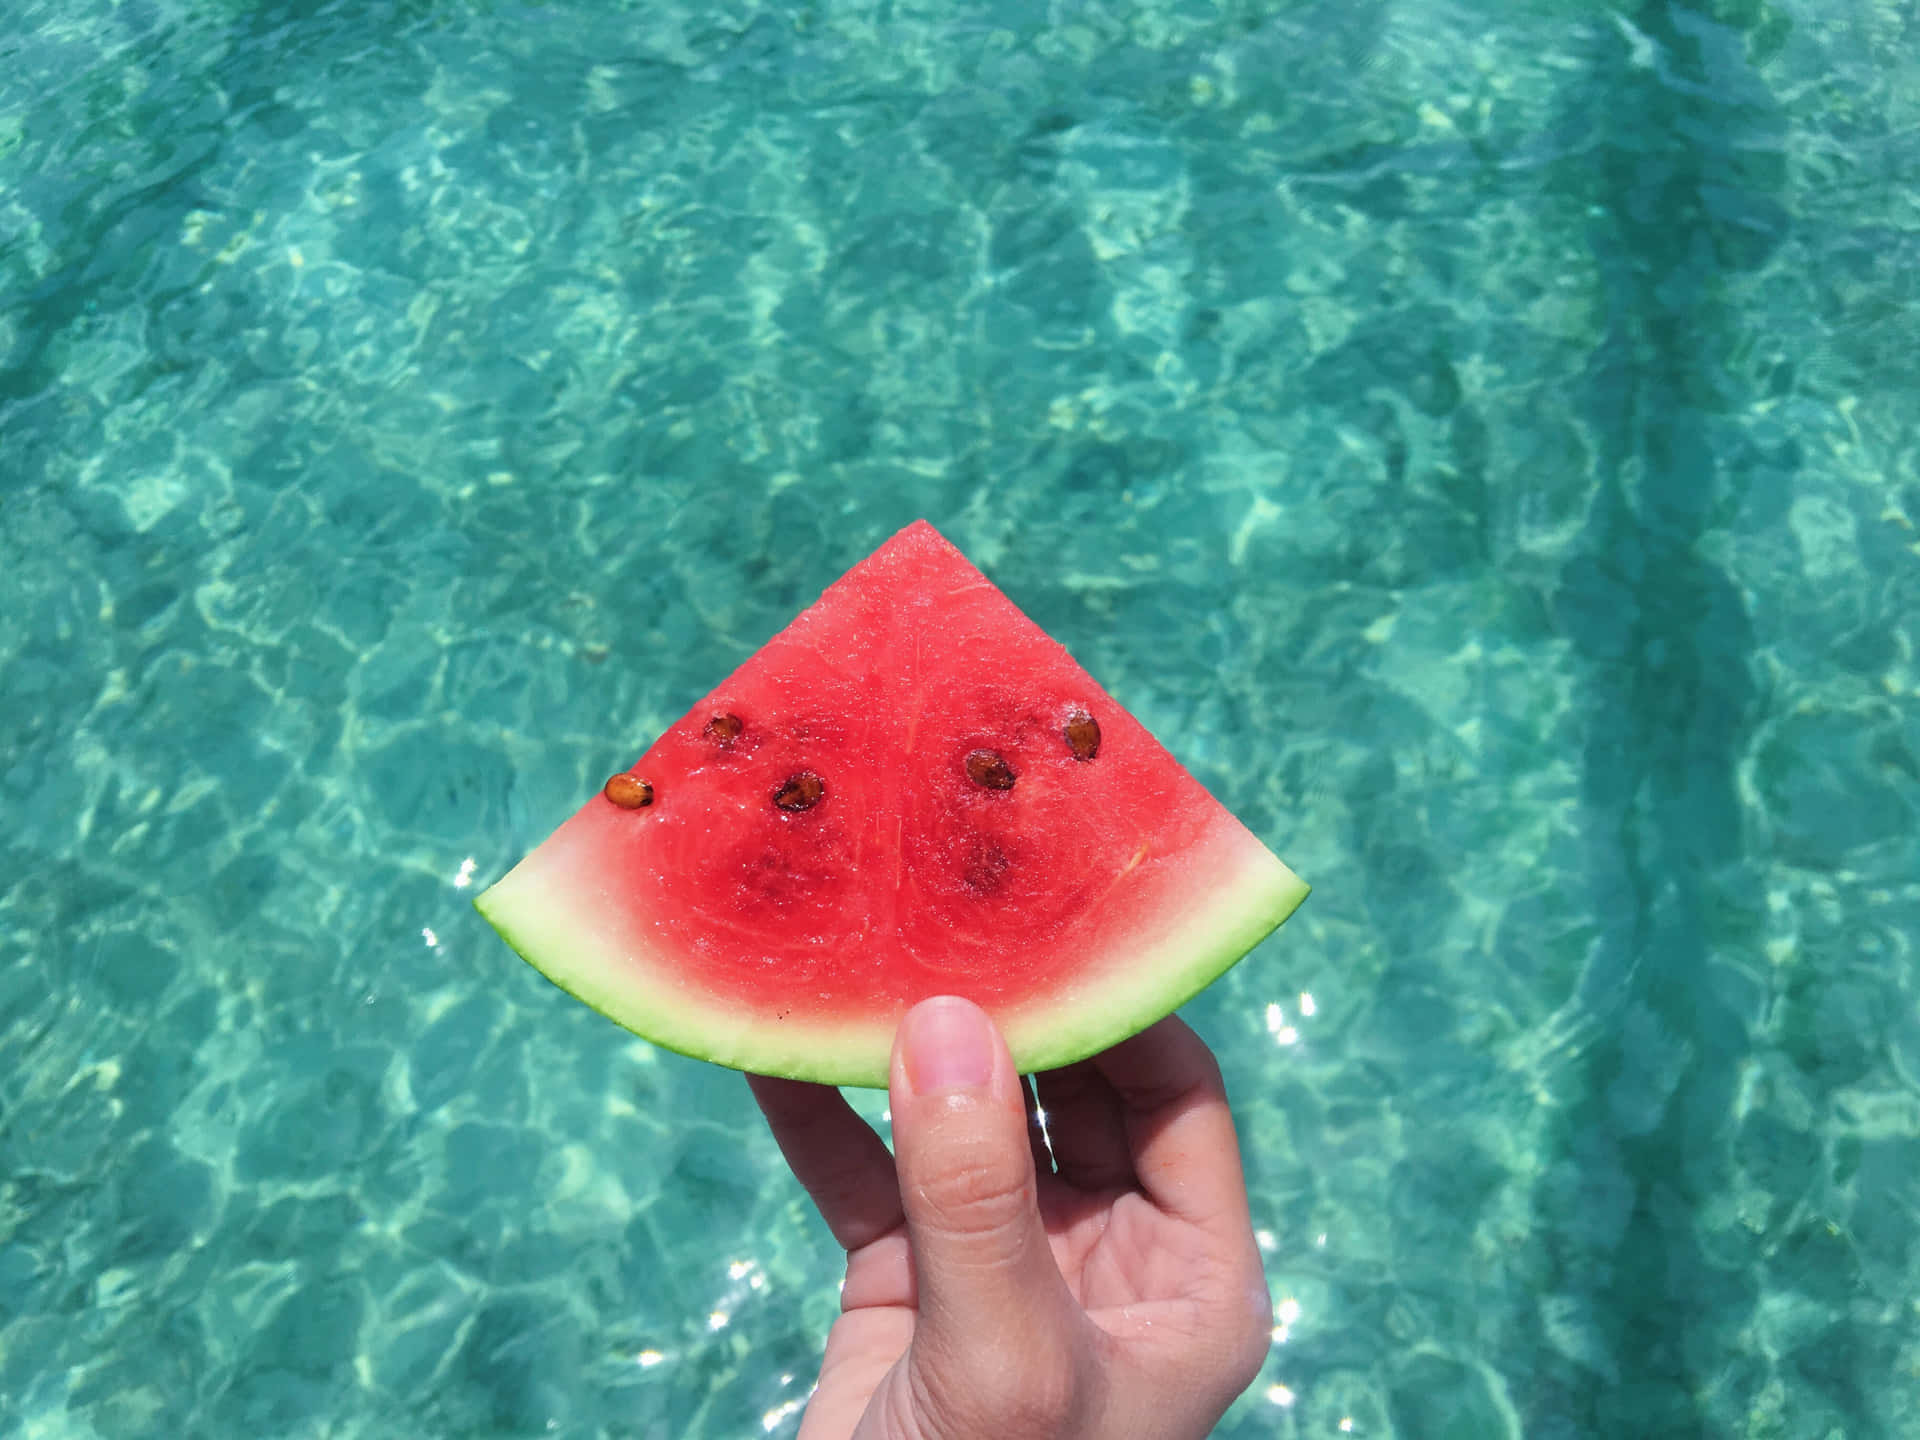 Ästhetischewassermelone In Einem Hintergrund Mit Einem Swimming Pool In Scheiben Geschnitten.